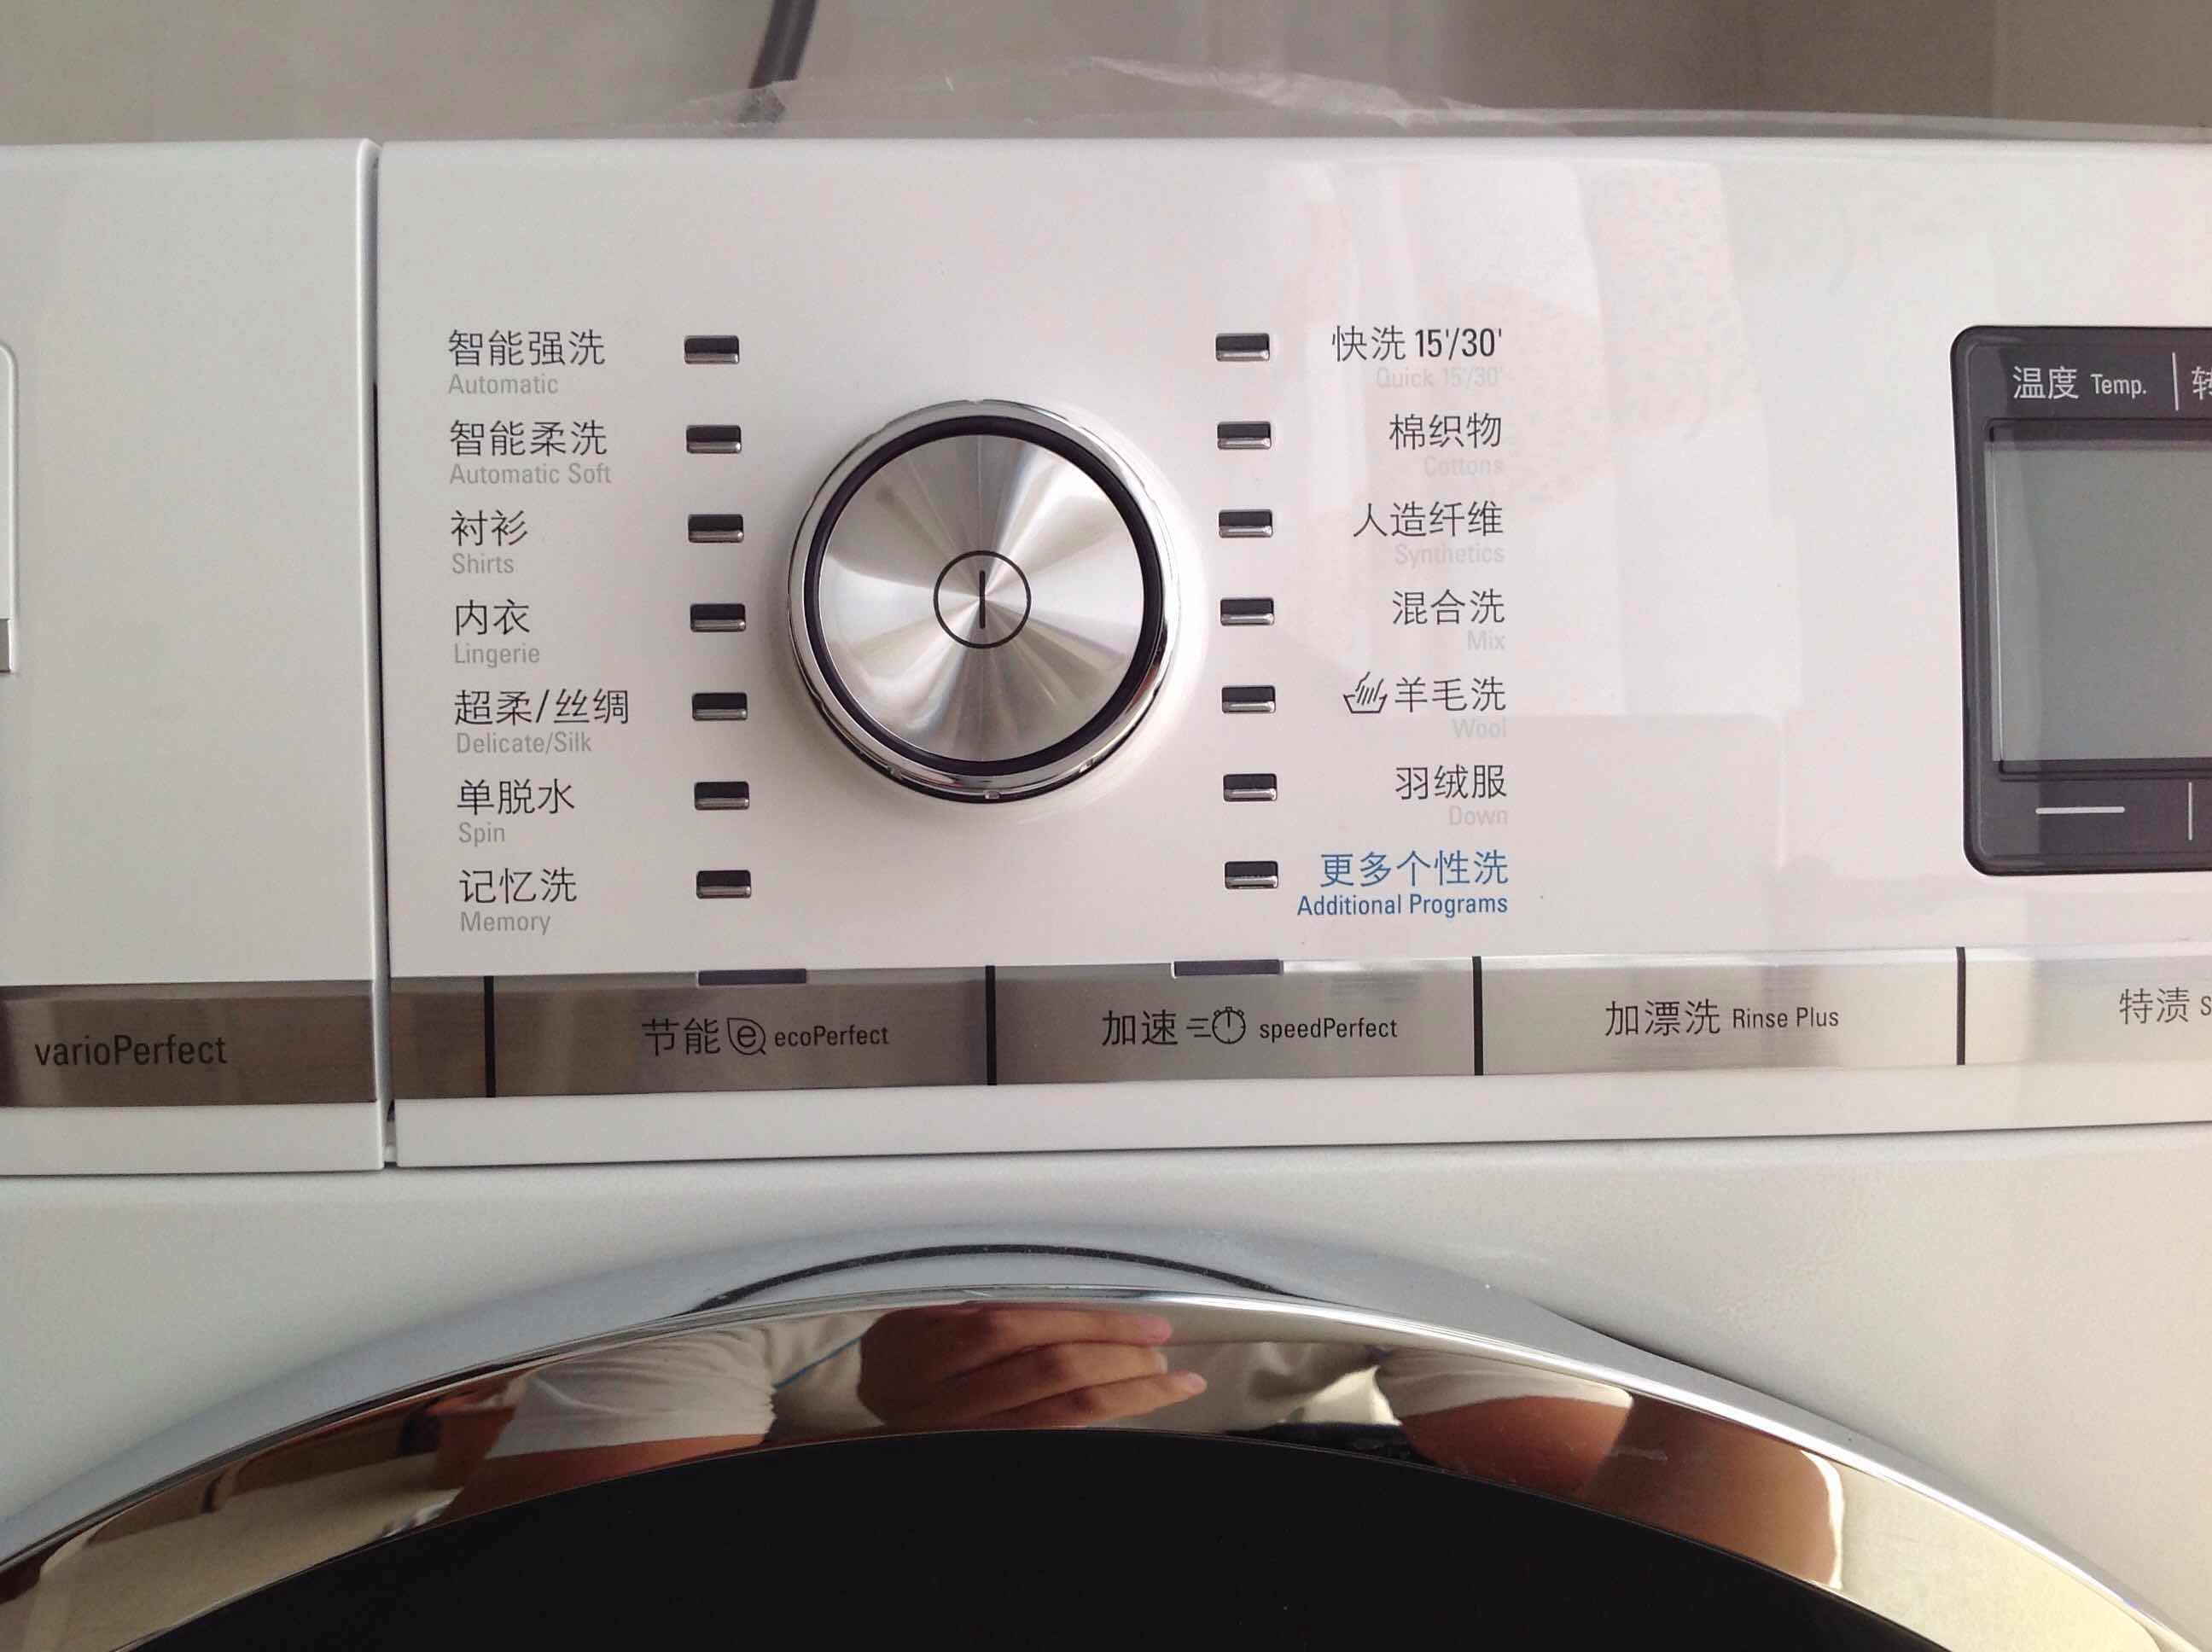 洗衣机 西门子洗衣机 西门子xqg90-wm14s7600w 点评  总结: 这个洗衣